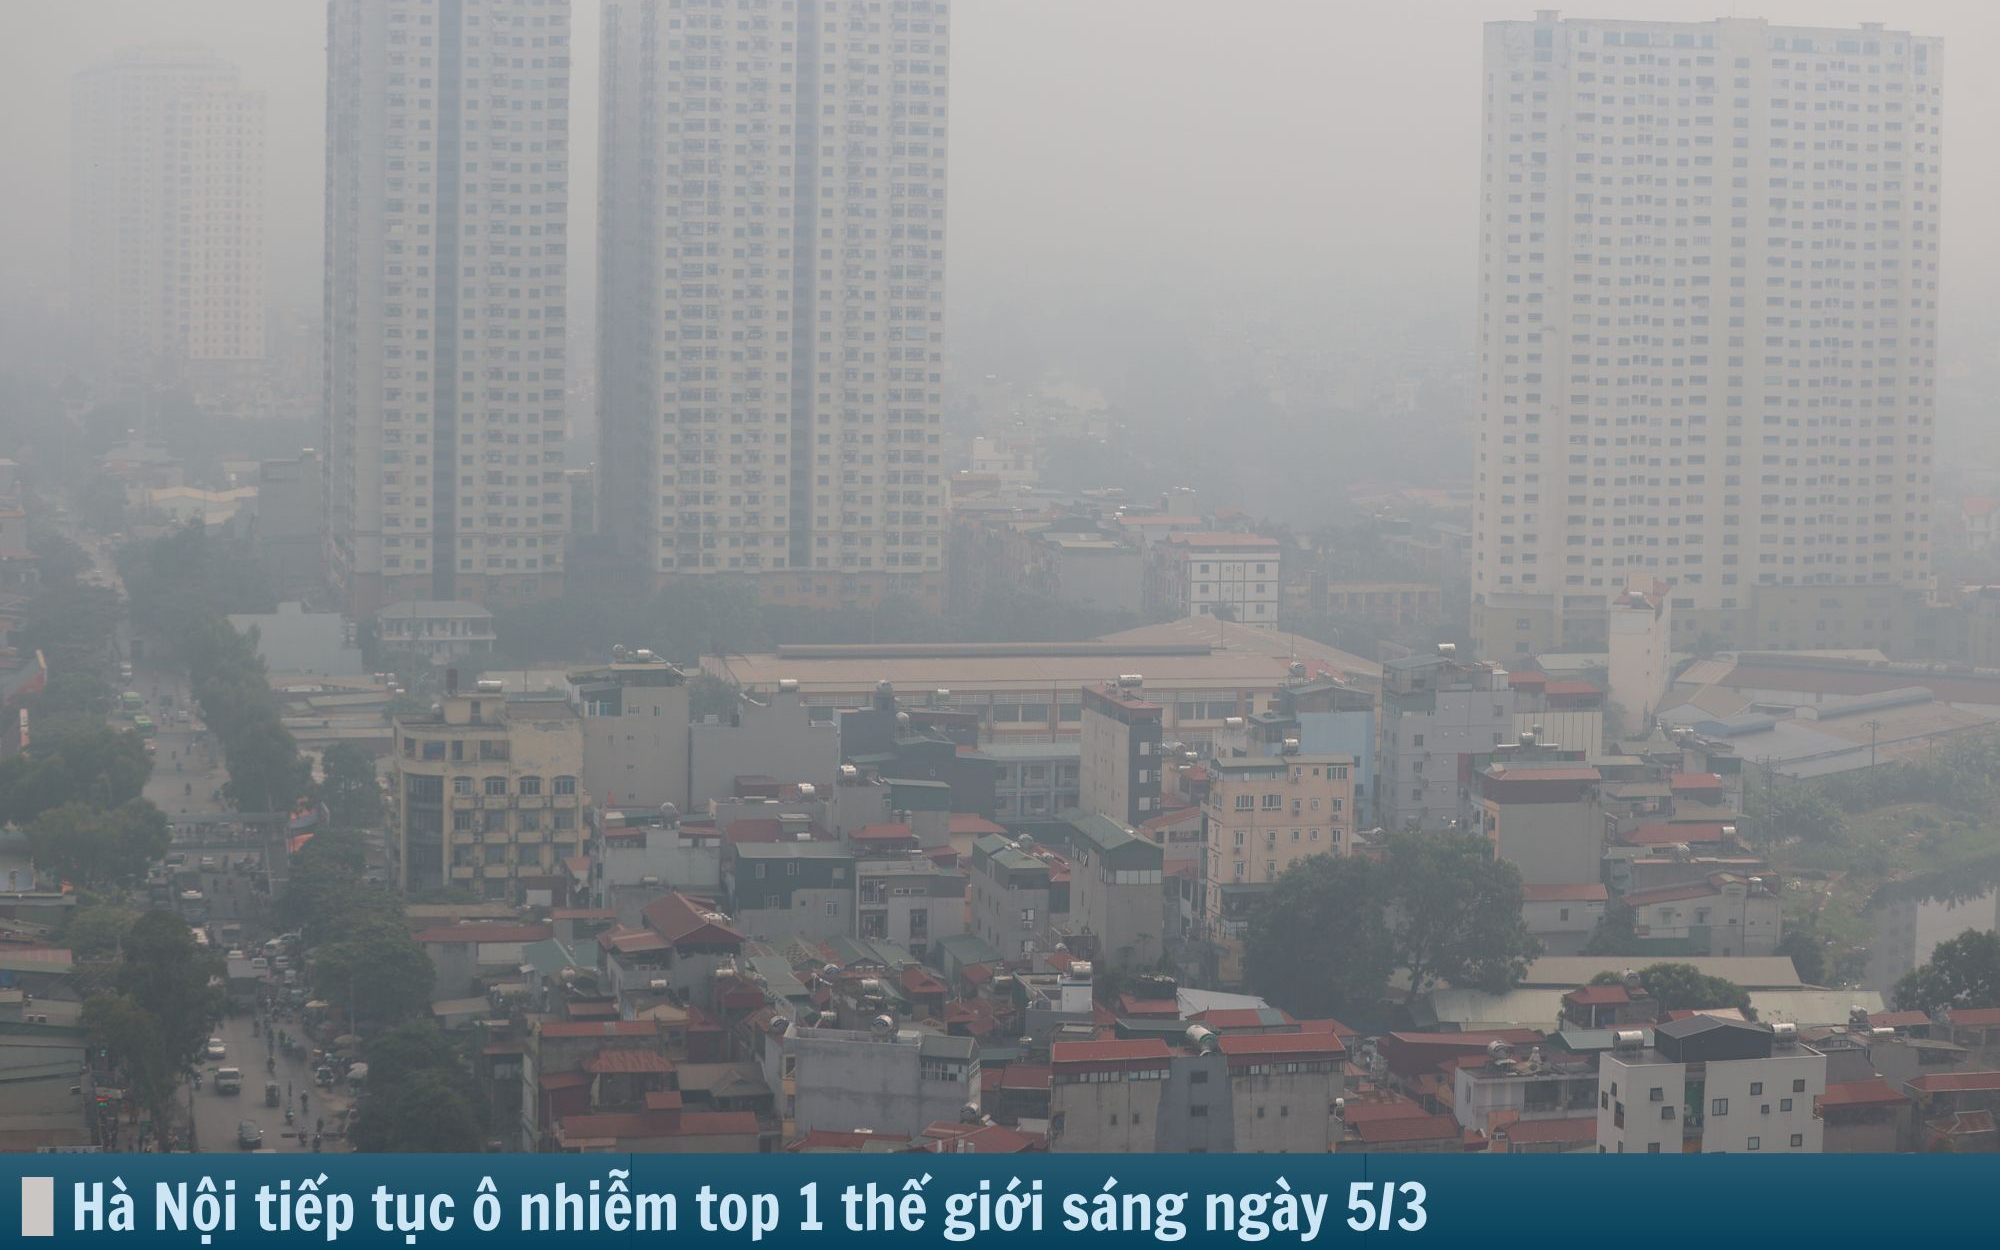 Hình ảnh báo chí 24h: Hà Nội tiếp tục ô nhiễm số 1 thế giới